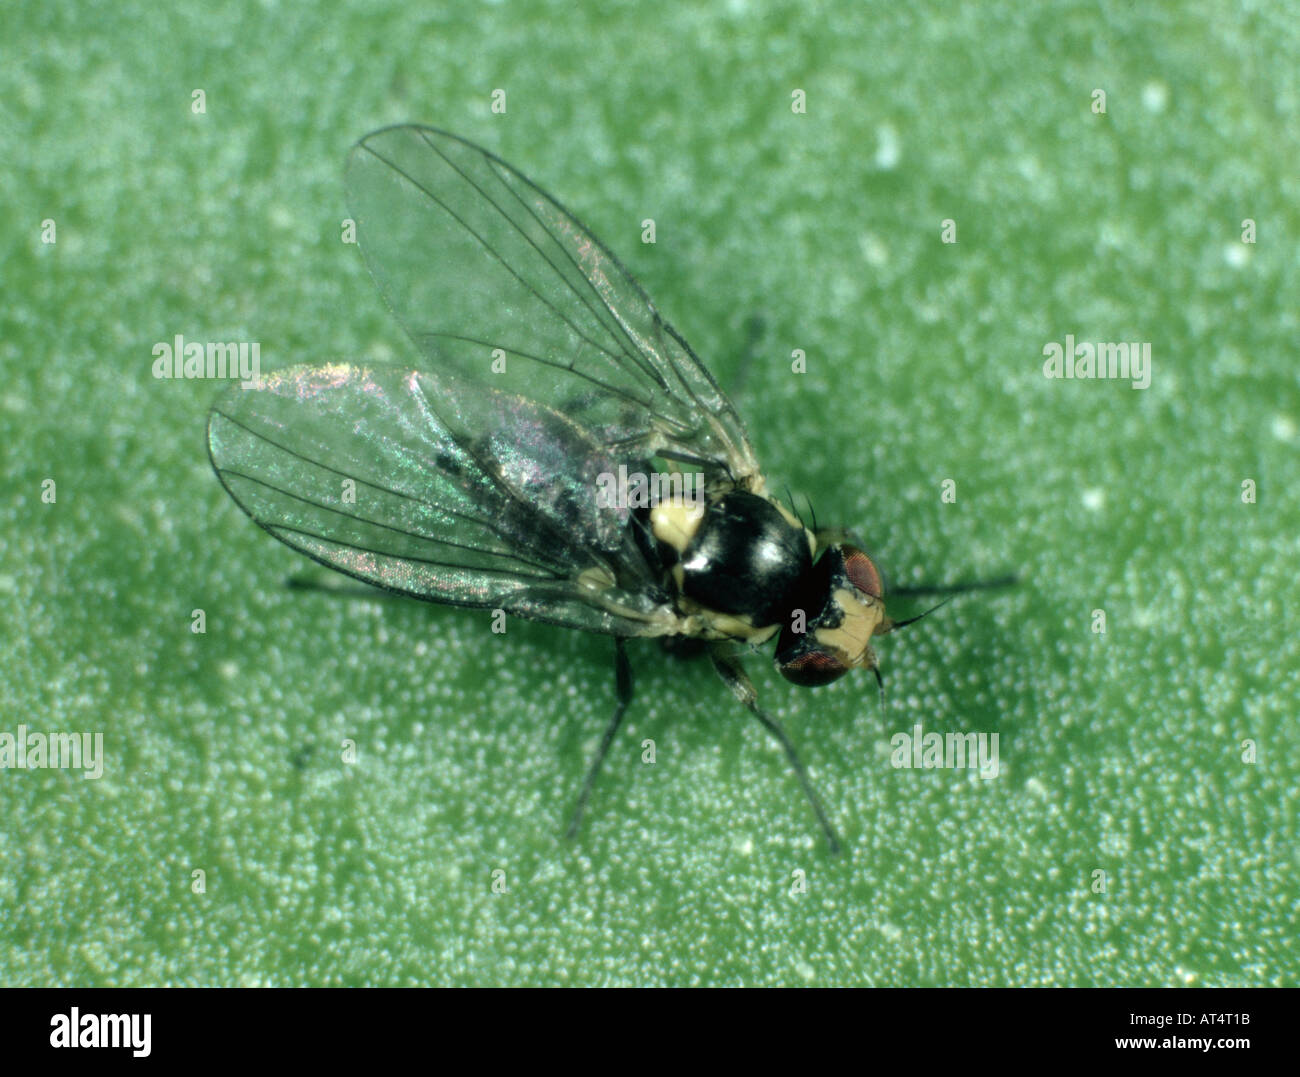 Mosca de adulto Liriomyza trifolii, leafminer americano serpentina Foto de stock